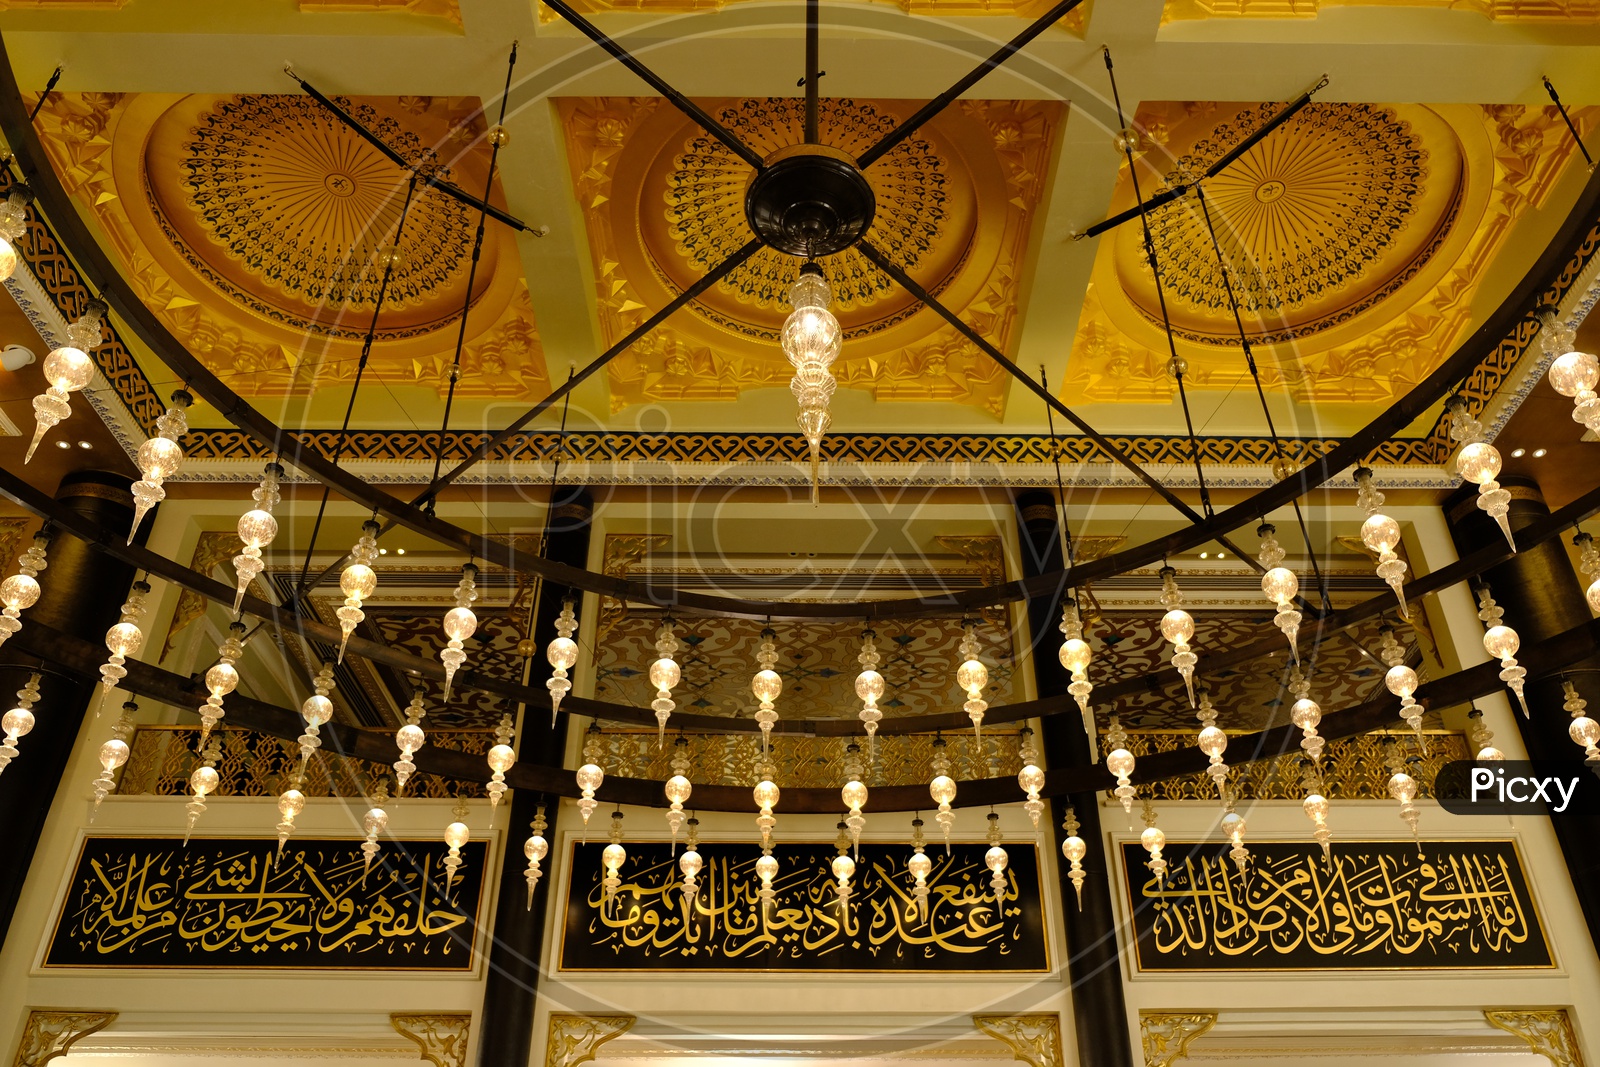 Ceiling and hanging lights at Katara Masjid